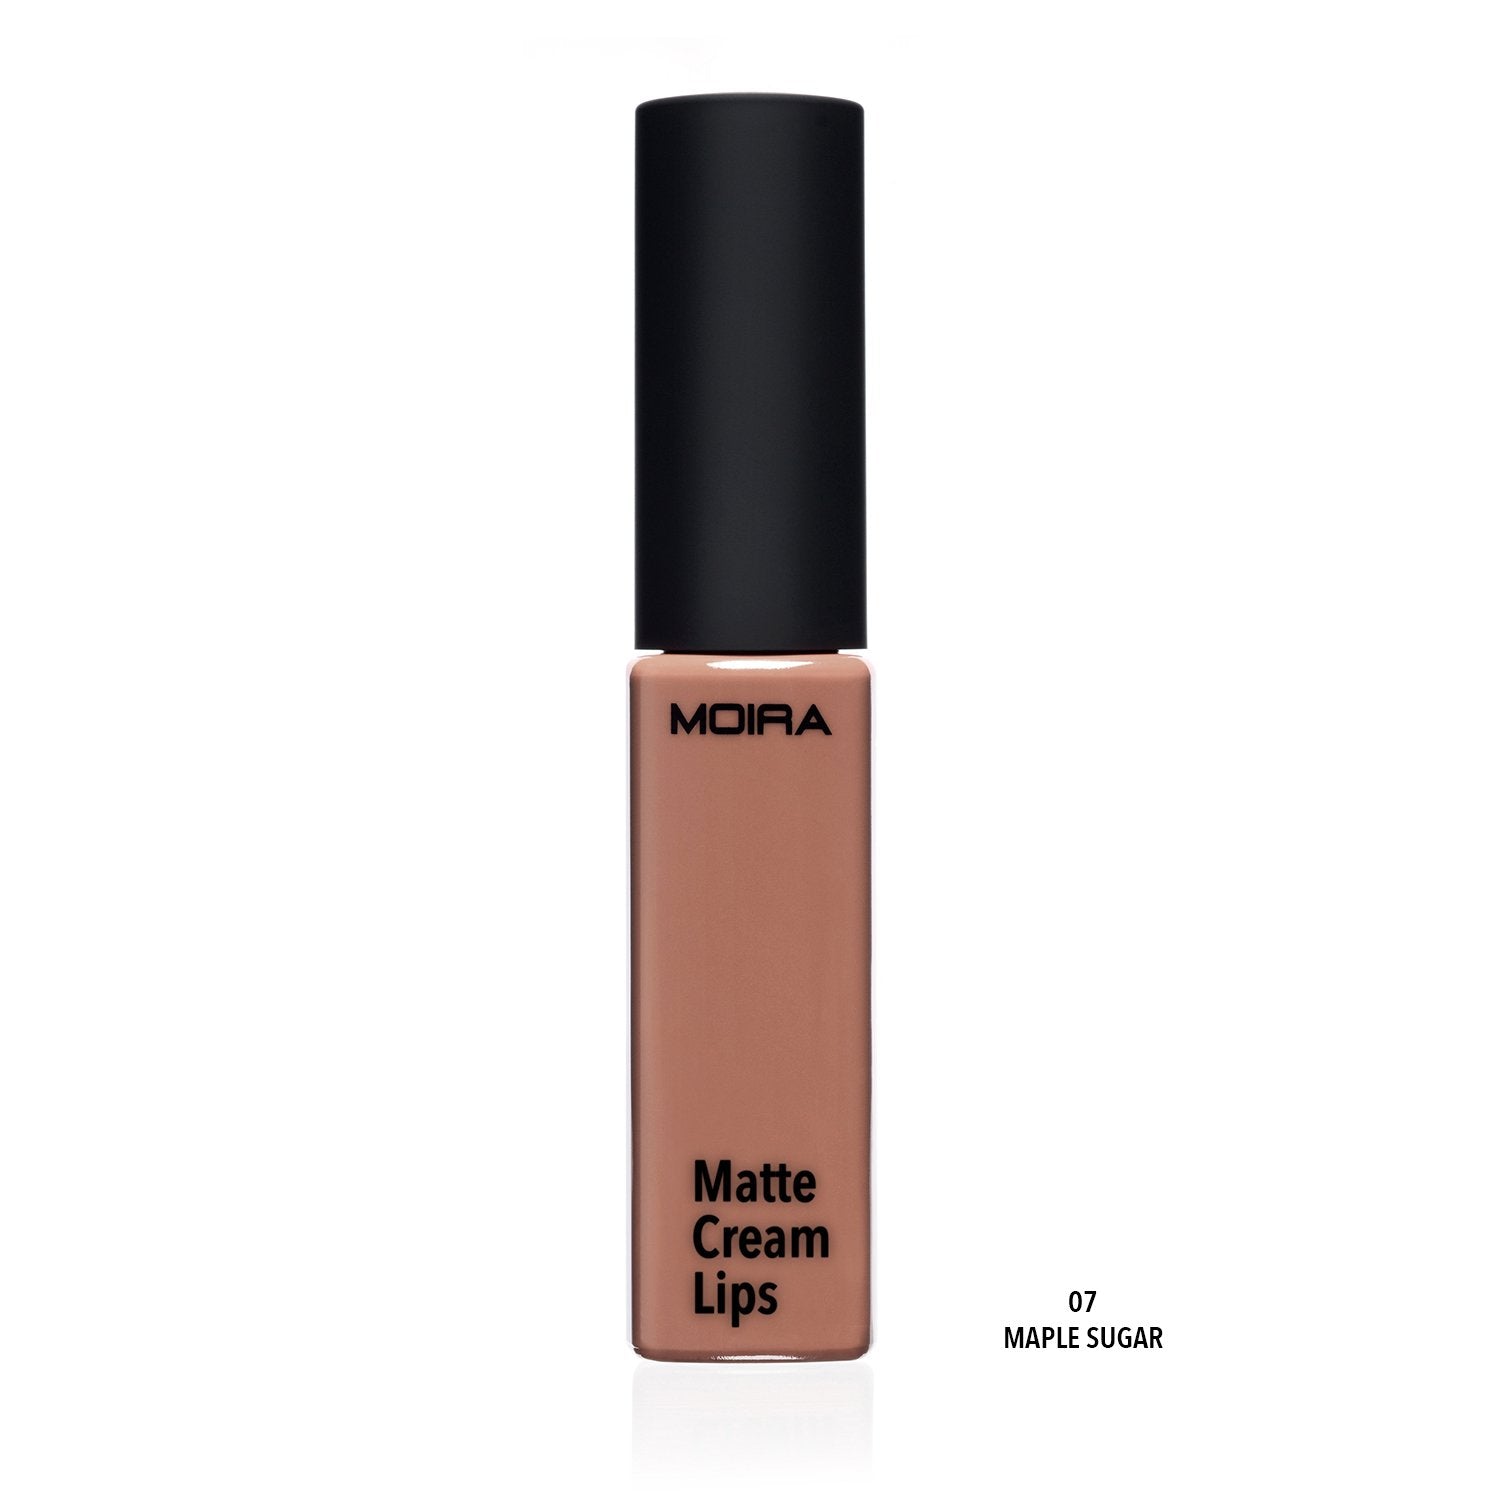 Matte Cream Lips (007, Maple Sugar)